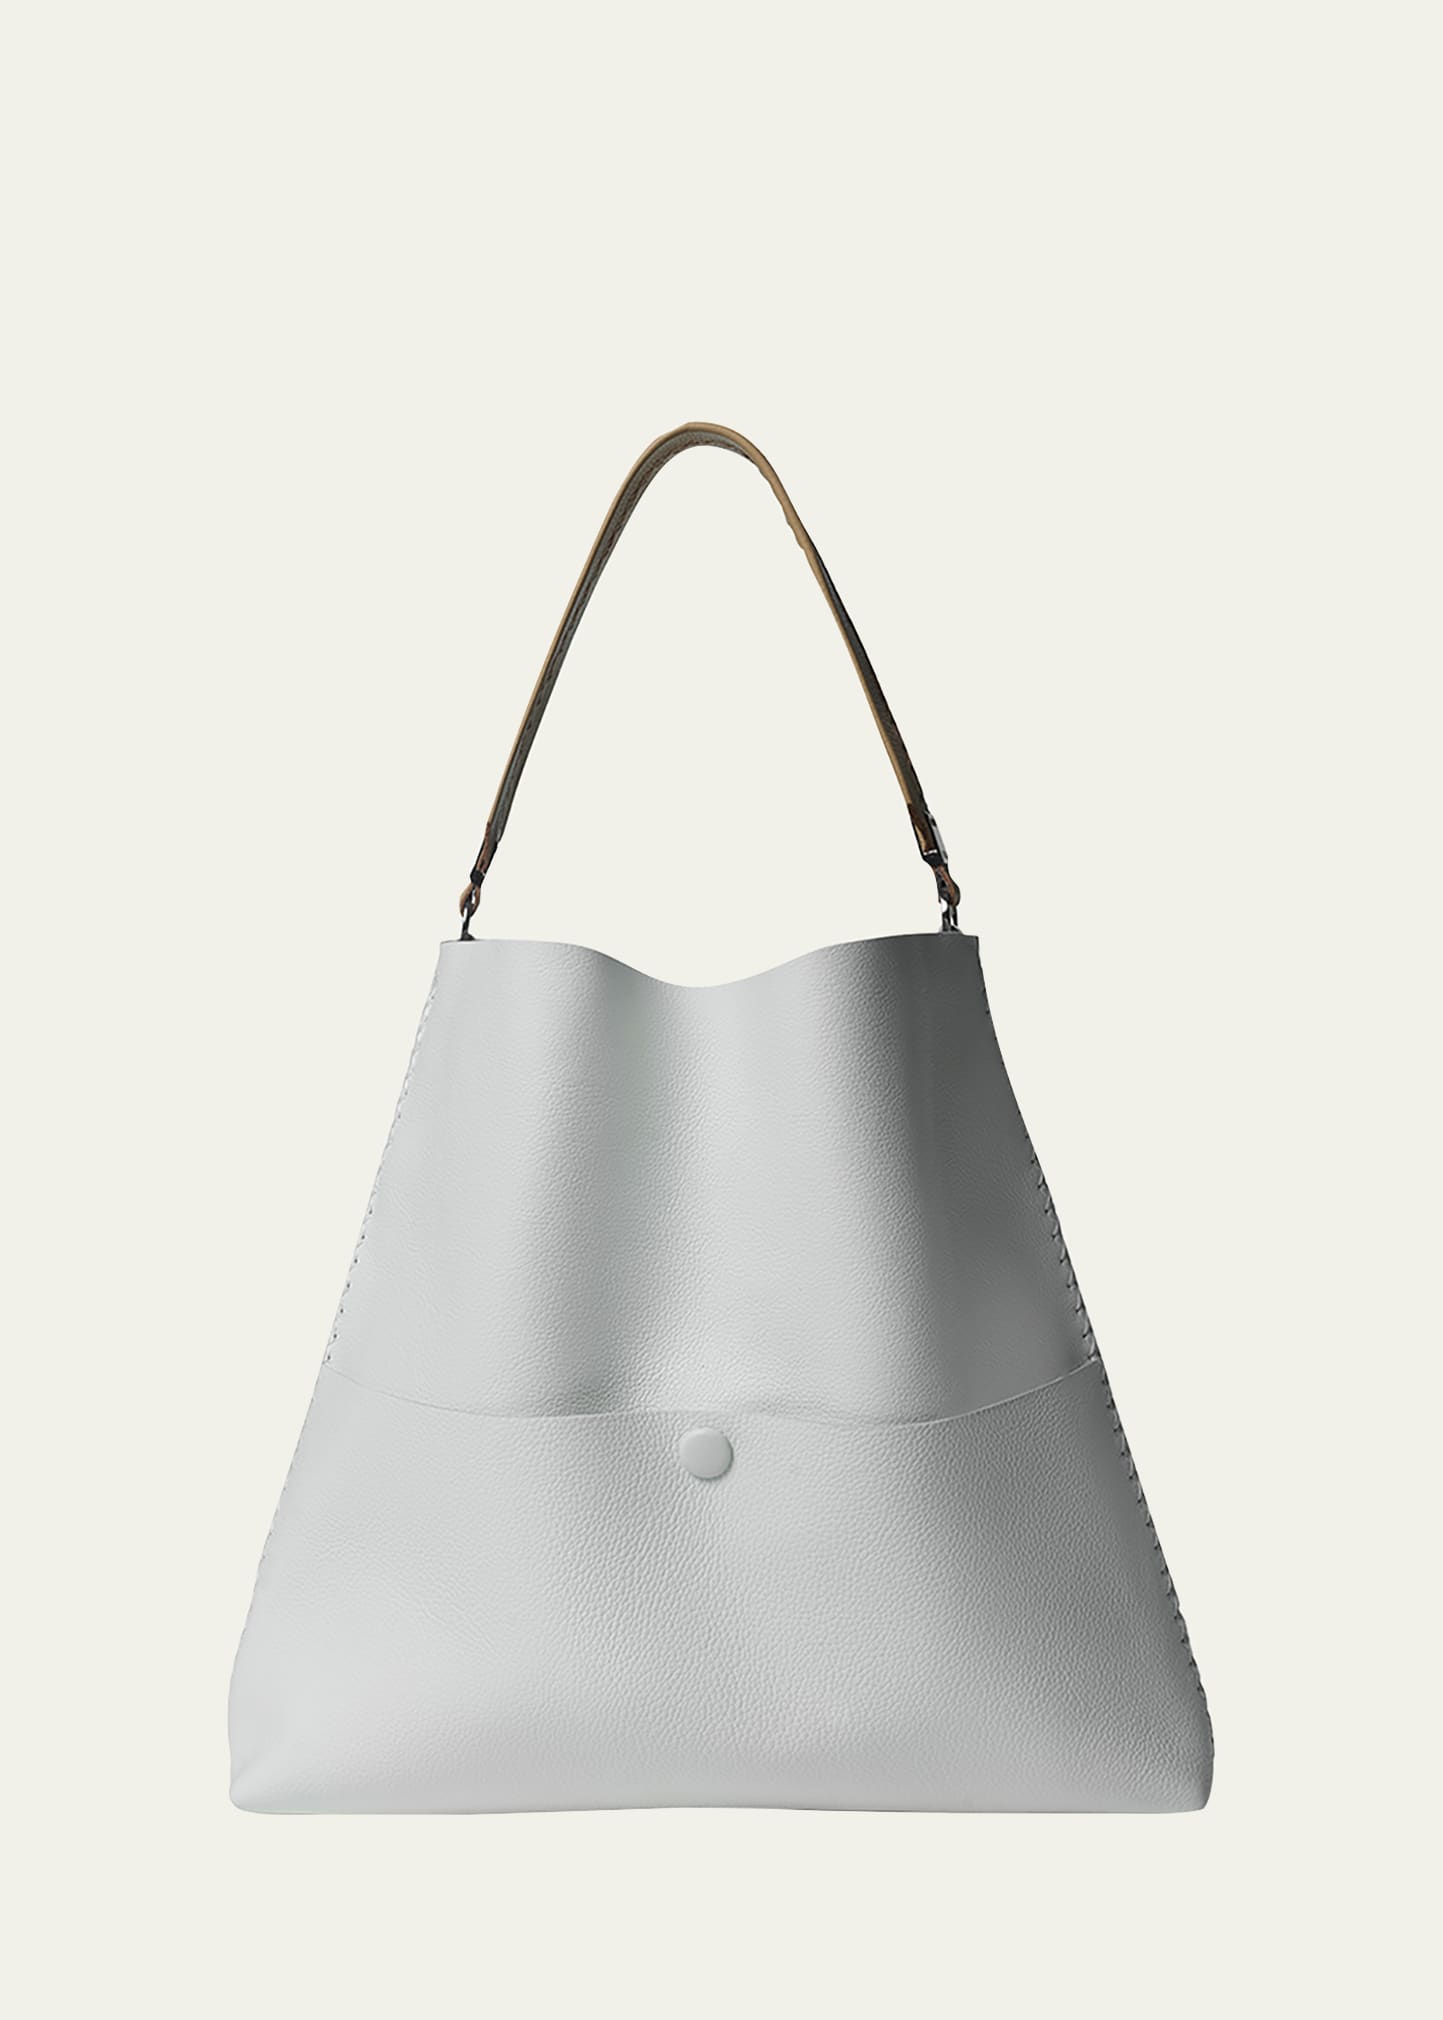 Callista Slim Medium Leather Tote Bag